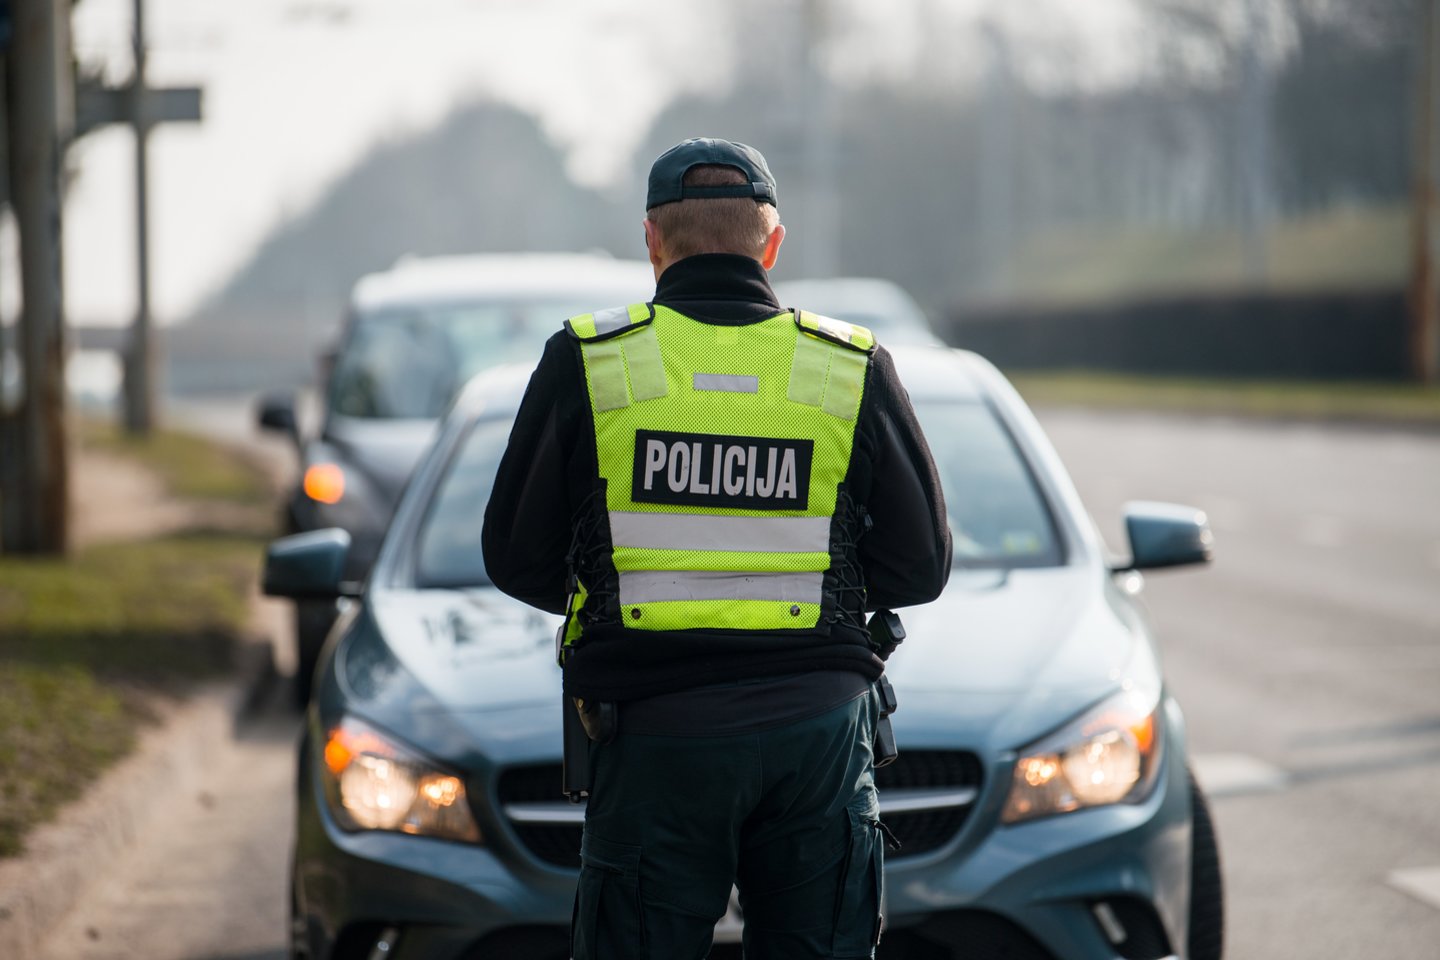 Lapkričio mėnesį policijos pareigūnai vykdys eismo saugumo prevencines priemones keliuose.<br>J.Stacevičiaus nuotr.